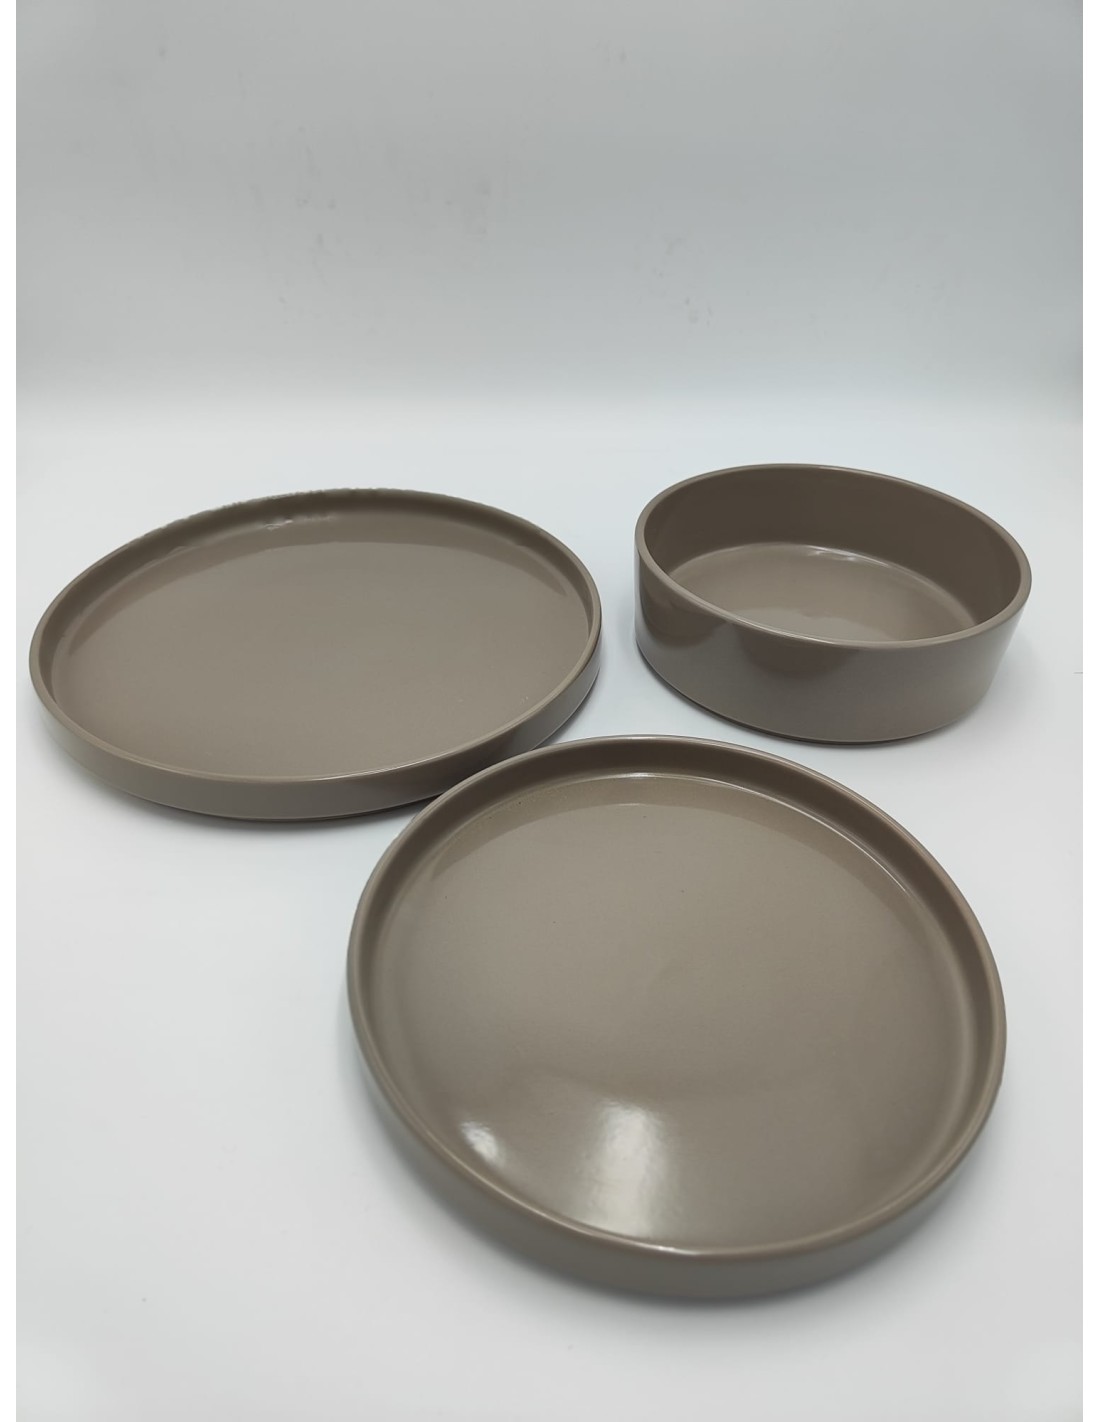 Servizio 12 piatti in ceramica tinta unita tortora